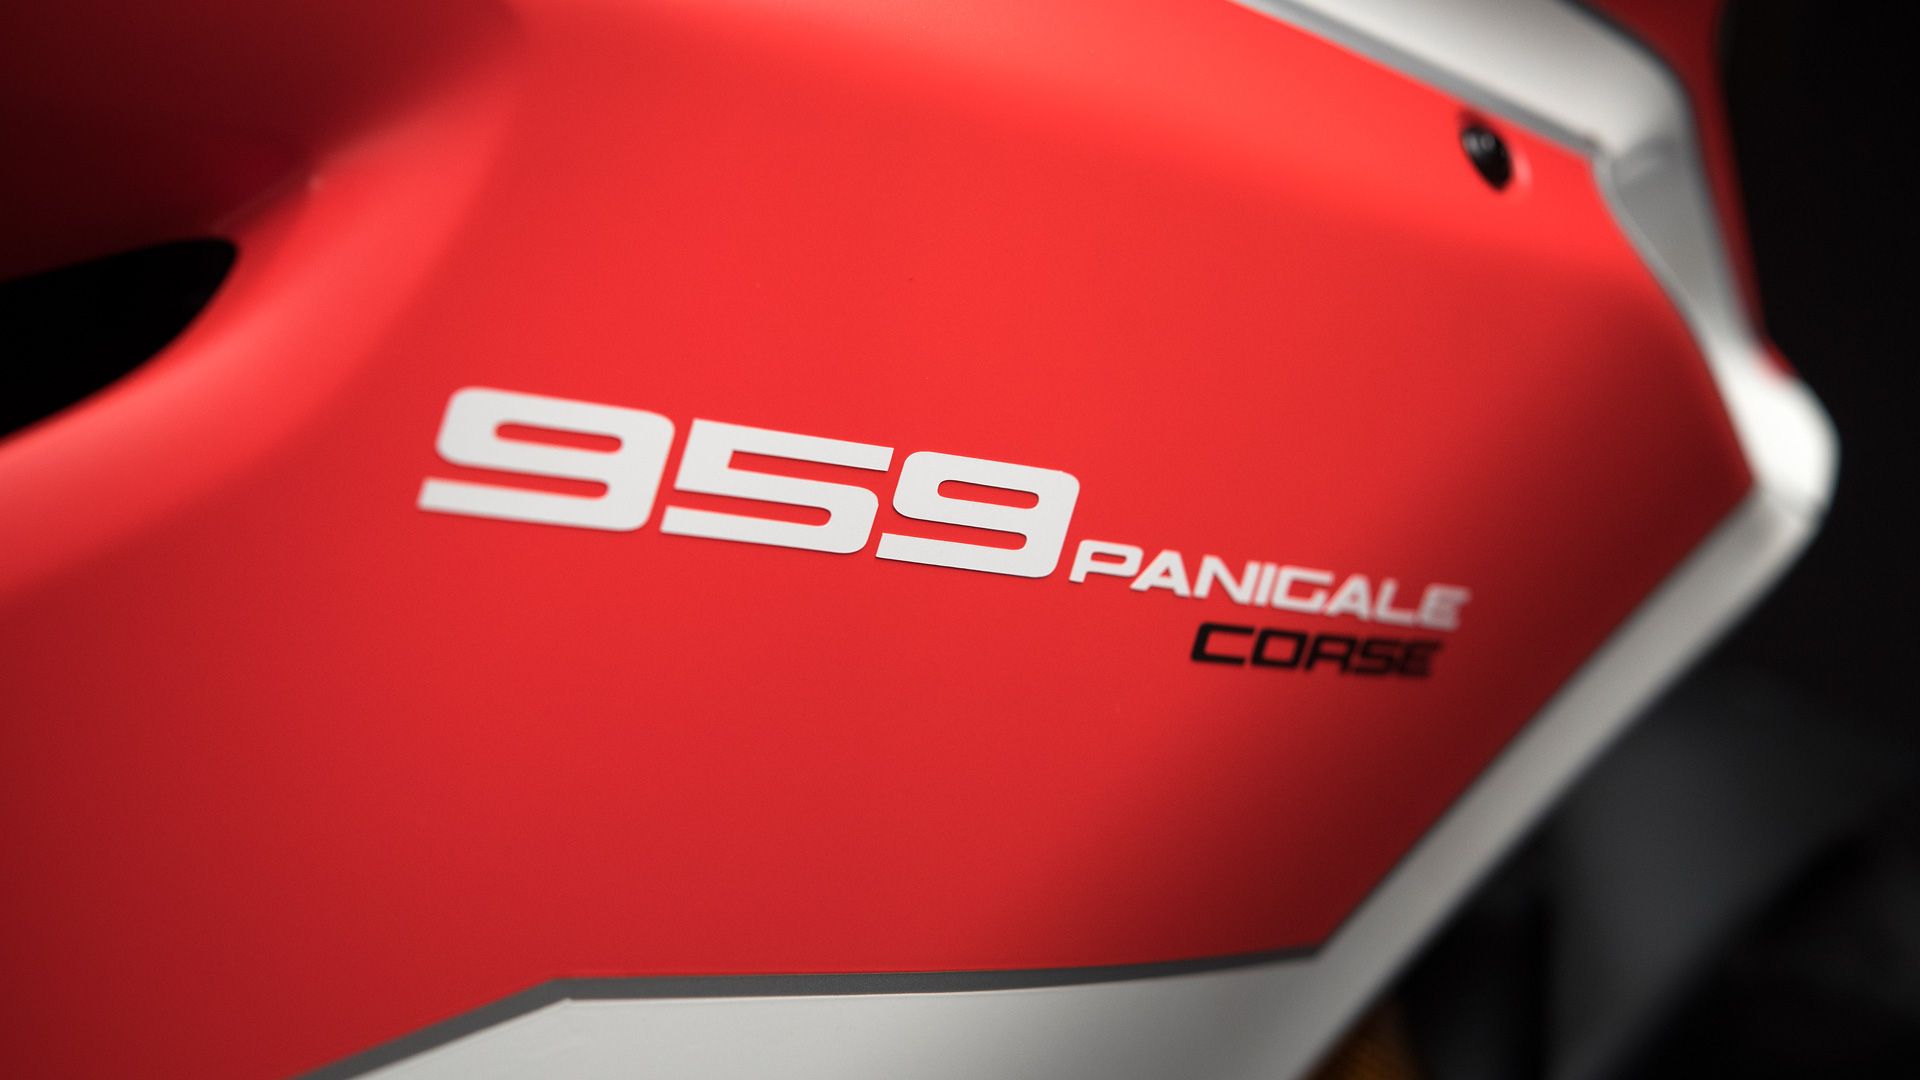 2019 Ducati 959 Panigale / 959 Panigale Corse